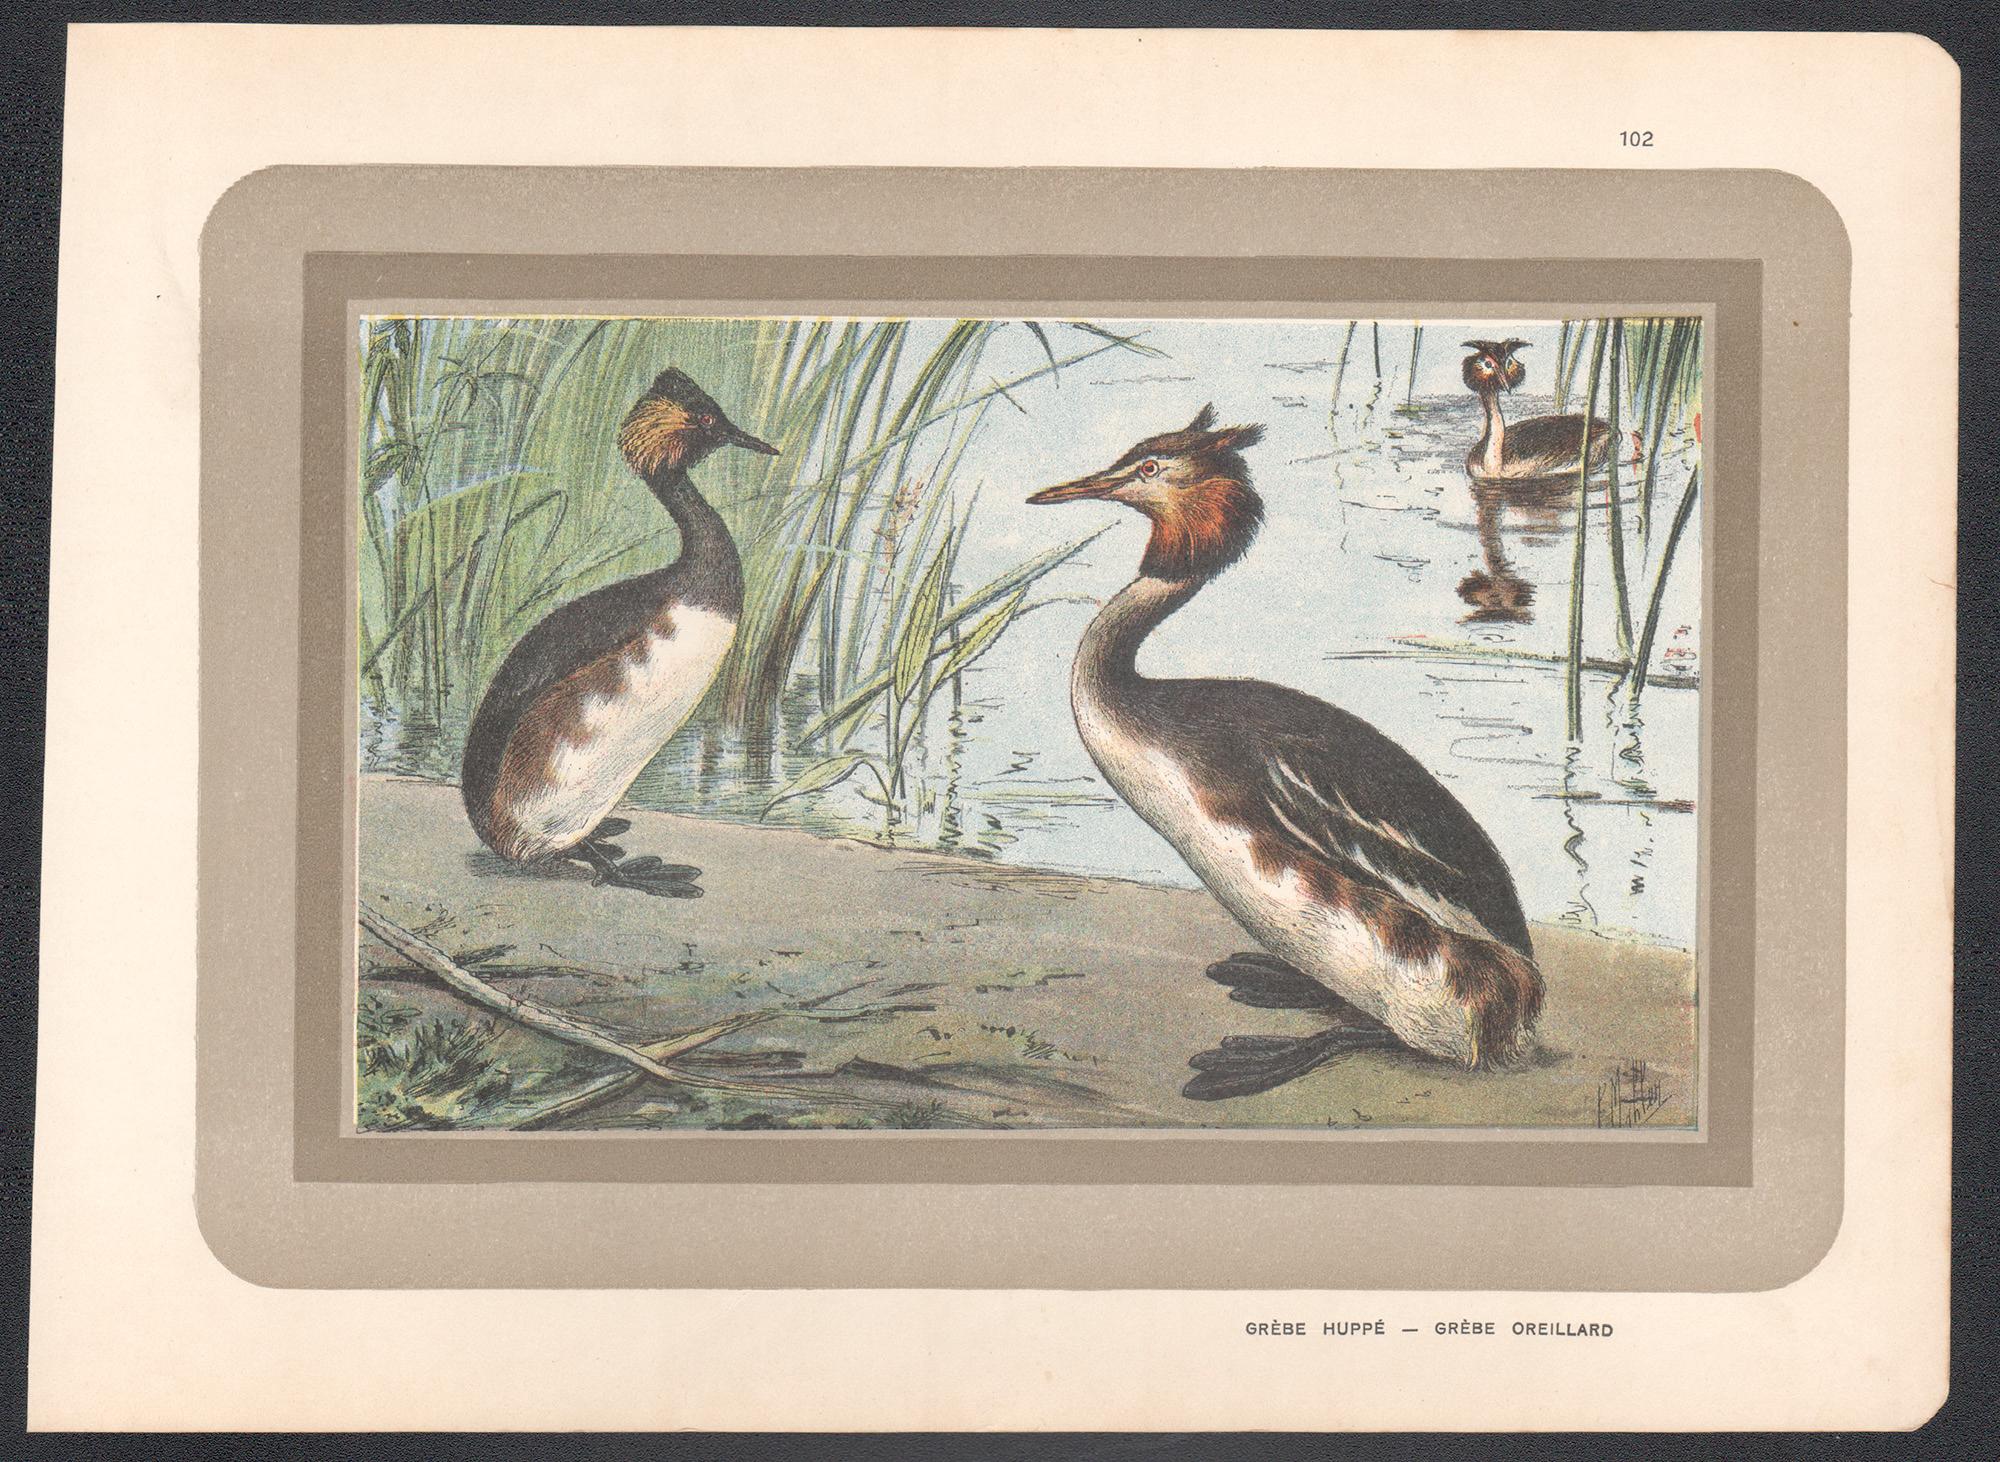 Großer Kreide, Französischer antiker Naturkunde-Aquarelldruck von Wasservögeln – Print von Unknown